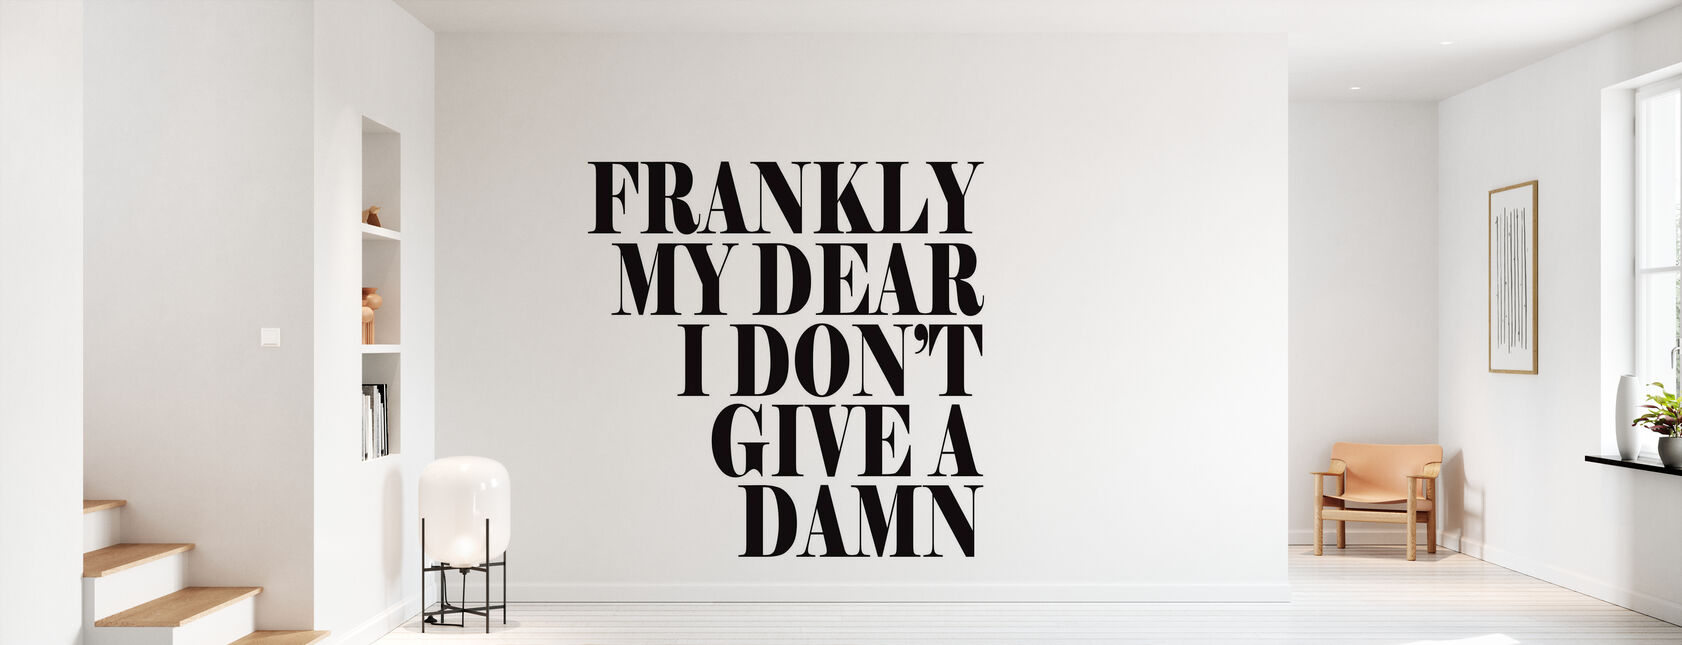 Frankly My Dear - Wallpaper - Hallway